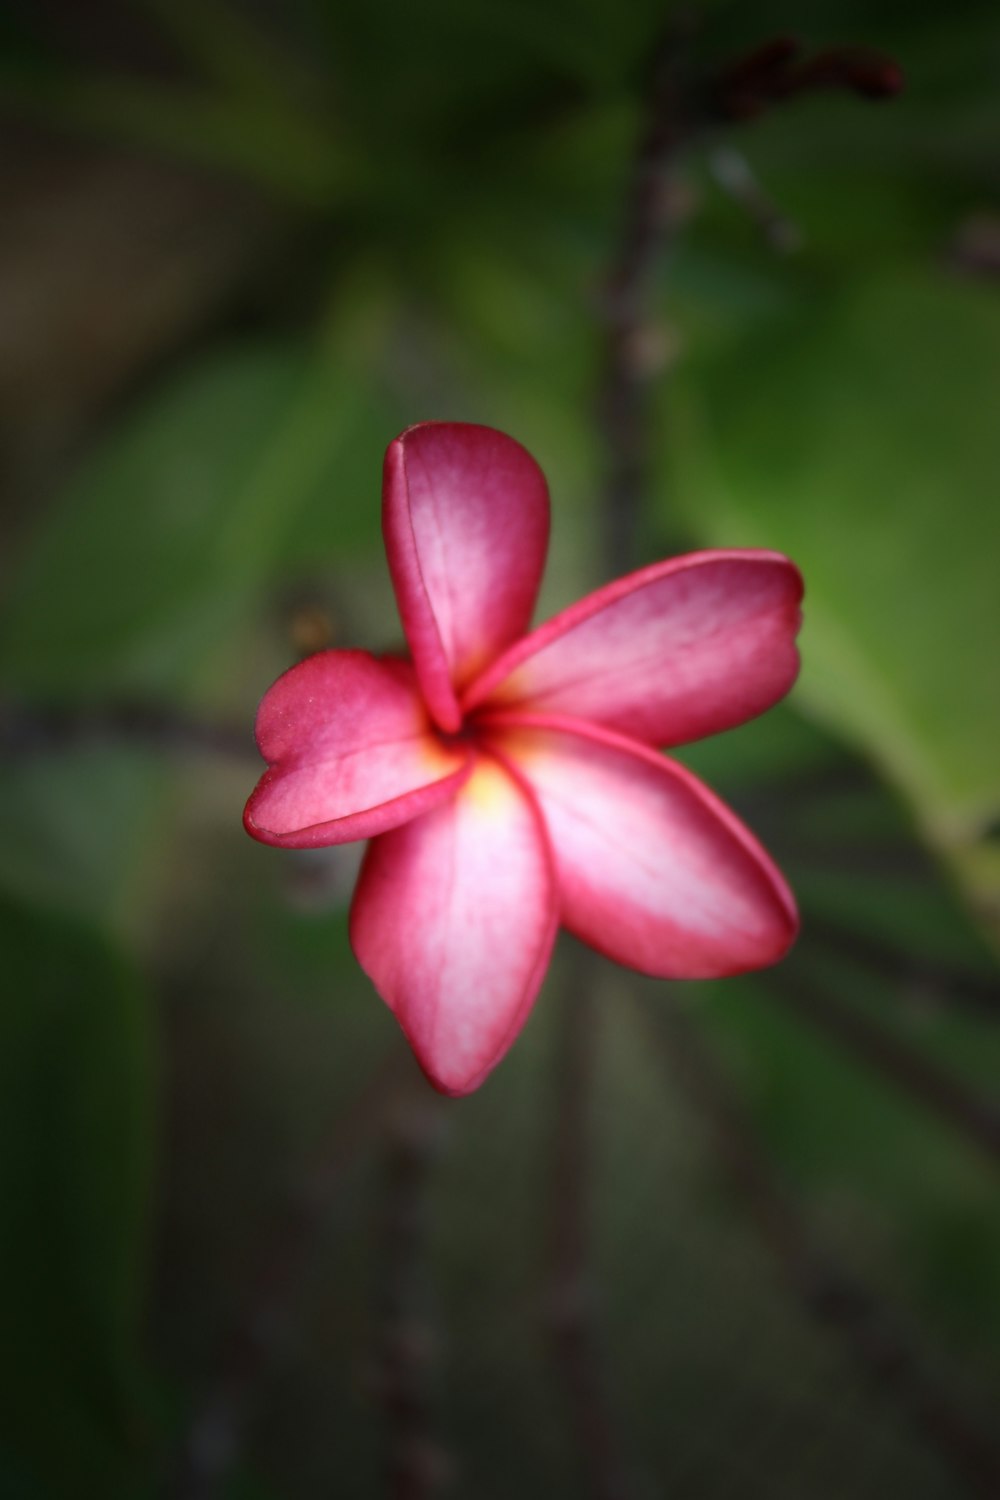 pink 5 petaled flower in bloom